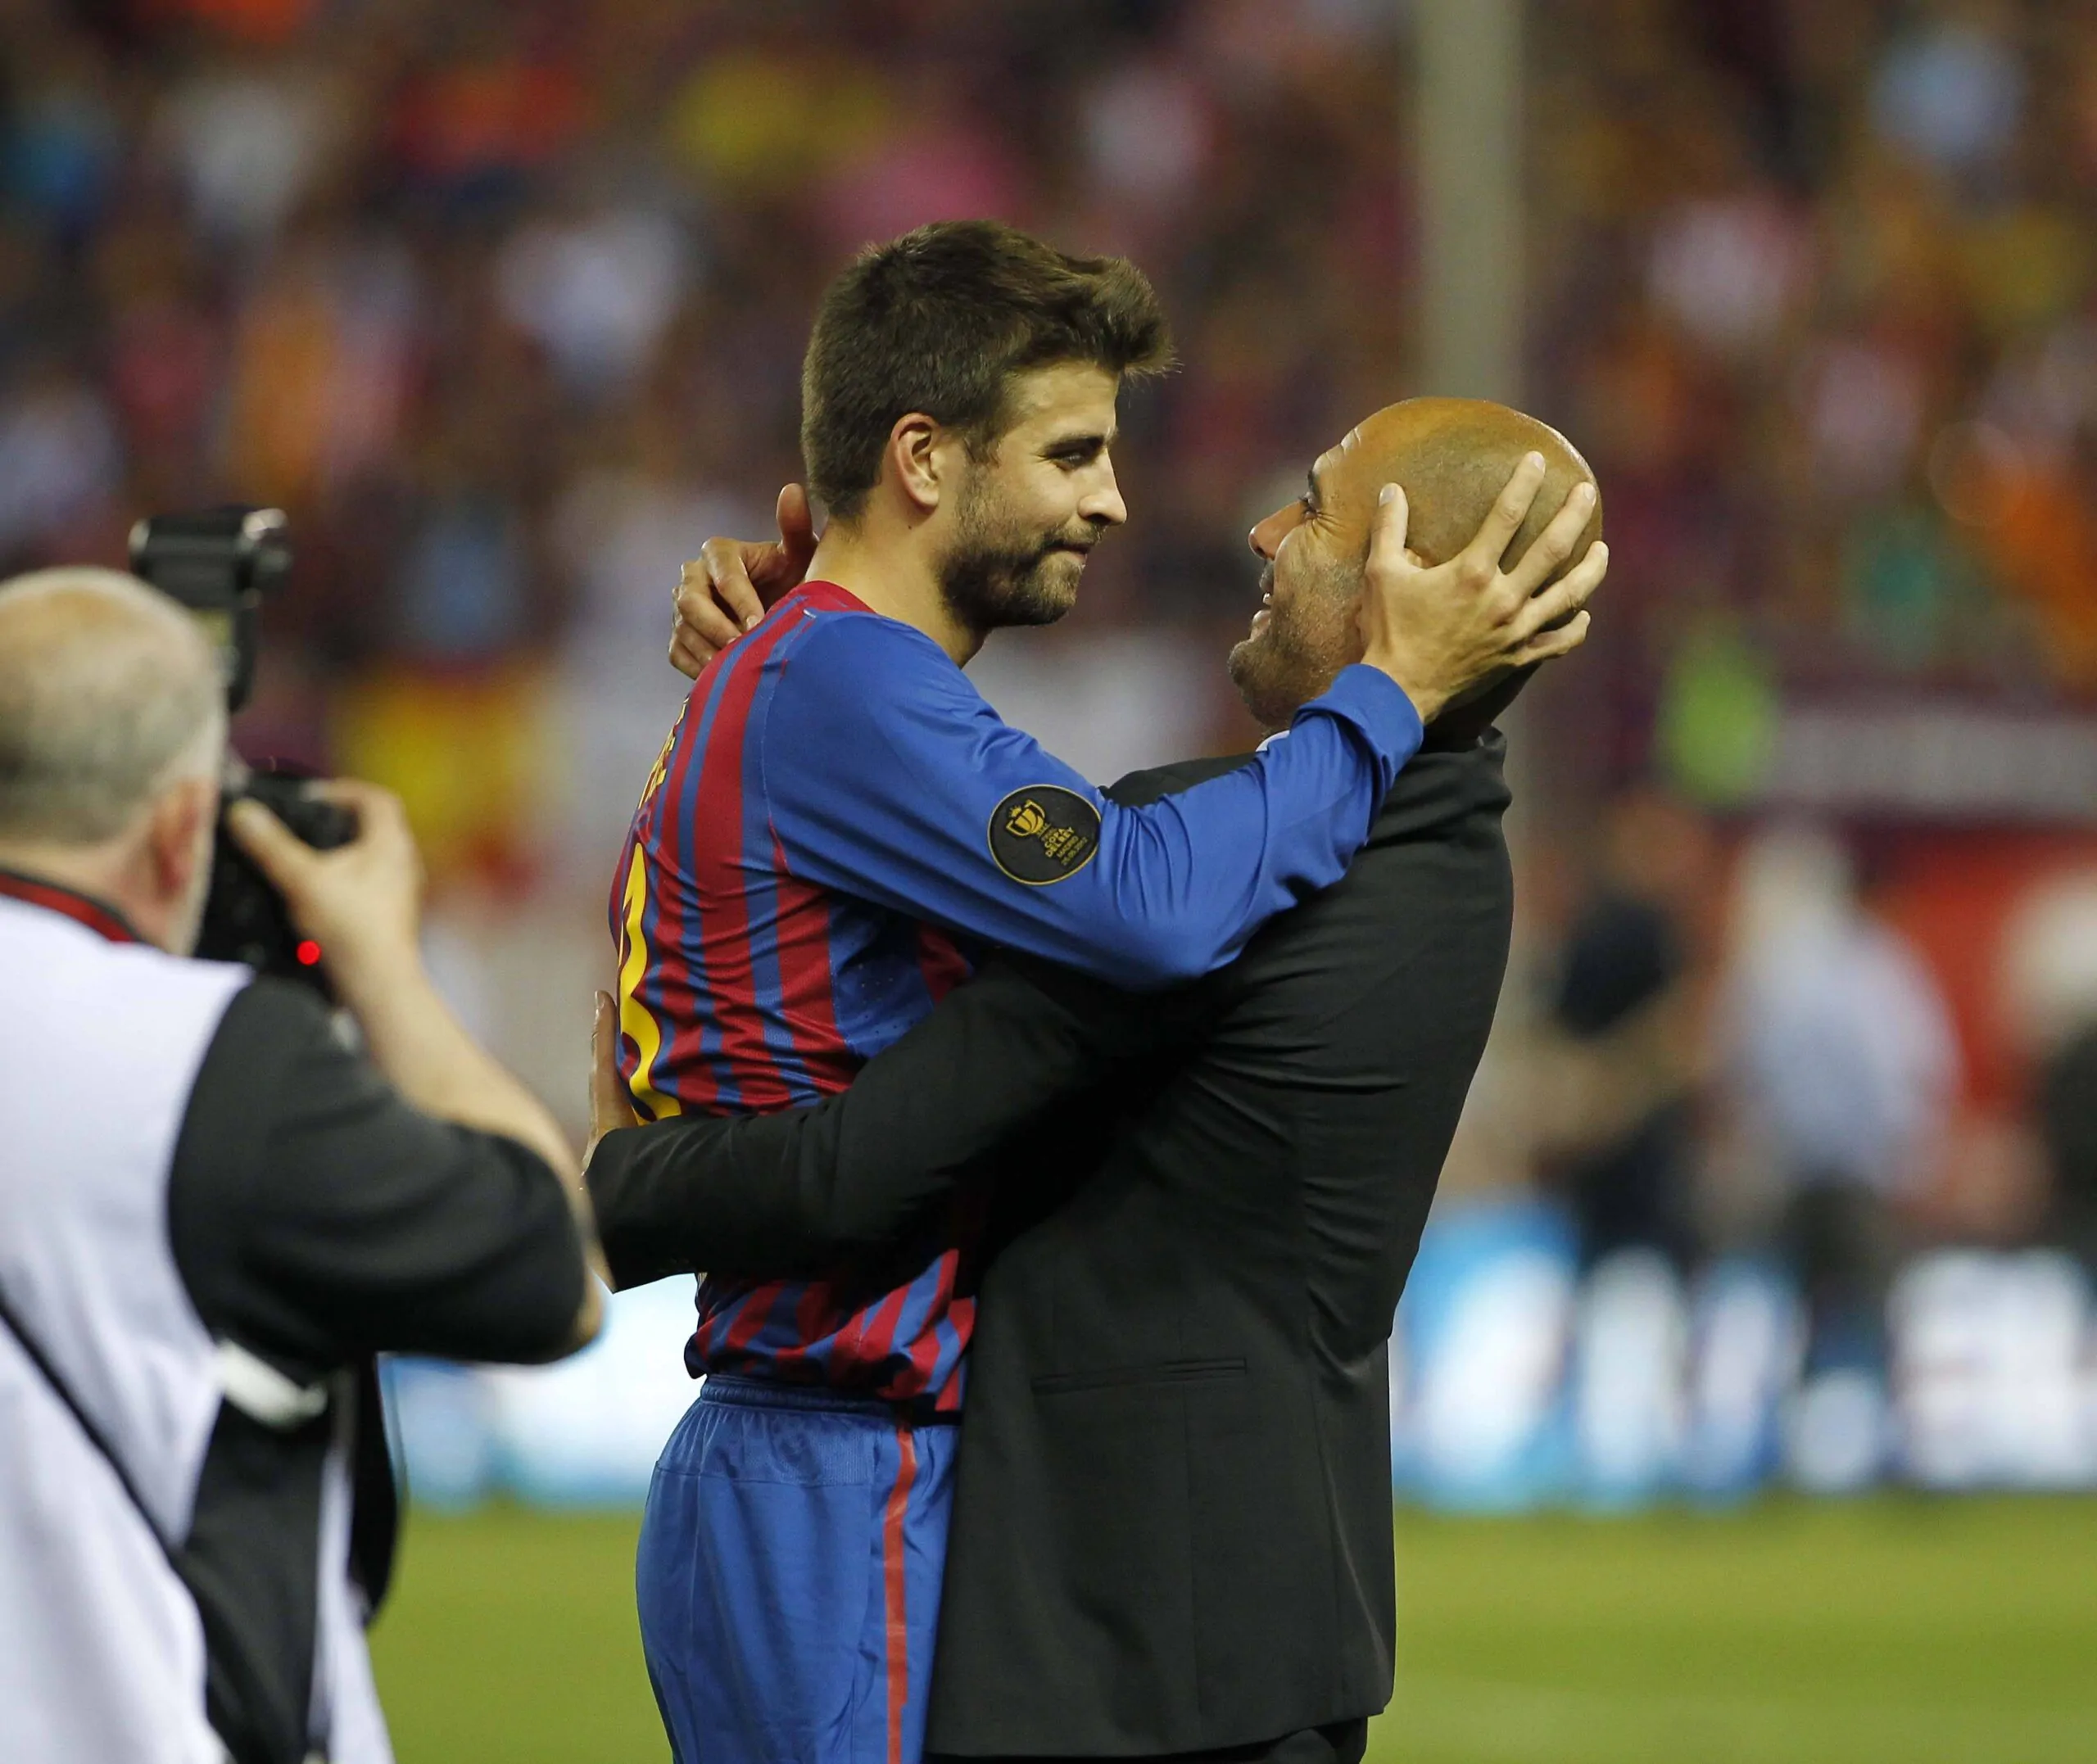 Pique e Guardiola, il triangolo amoroso del dopo Shakira: la notizia infiamma la Spagna